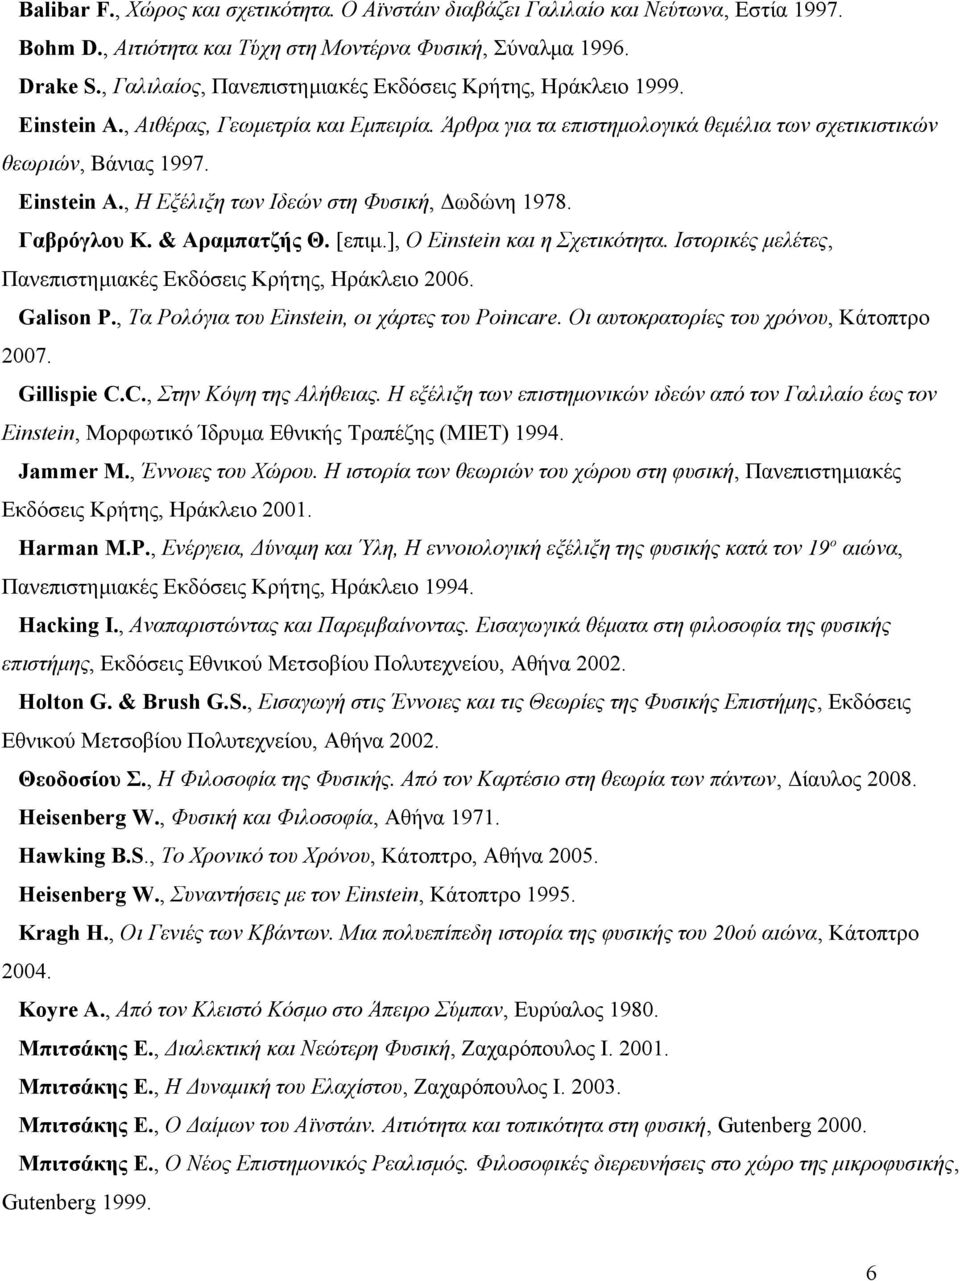 Γαβρόγλου Κ. & Αραμπατζής Θ. [επιμ.], Ο Einstein και η Σχετικότητα. Ιστορικές μελέτες, Πανεπιστημιακές Εκδόσεις Κρήτης, Ηράκλειο 2006. Galison P., Τα Ρολόγια του Einstein, οι χάρτες του Poincare.